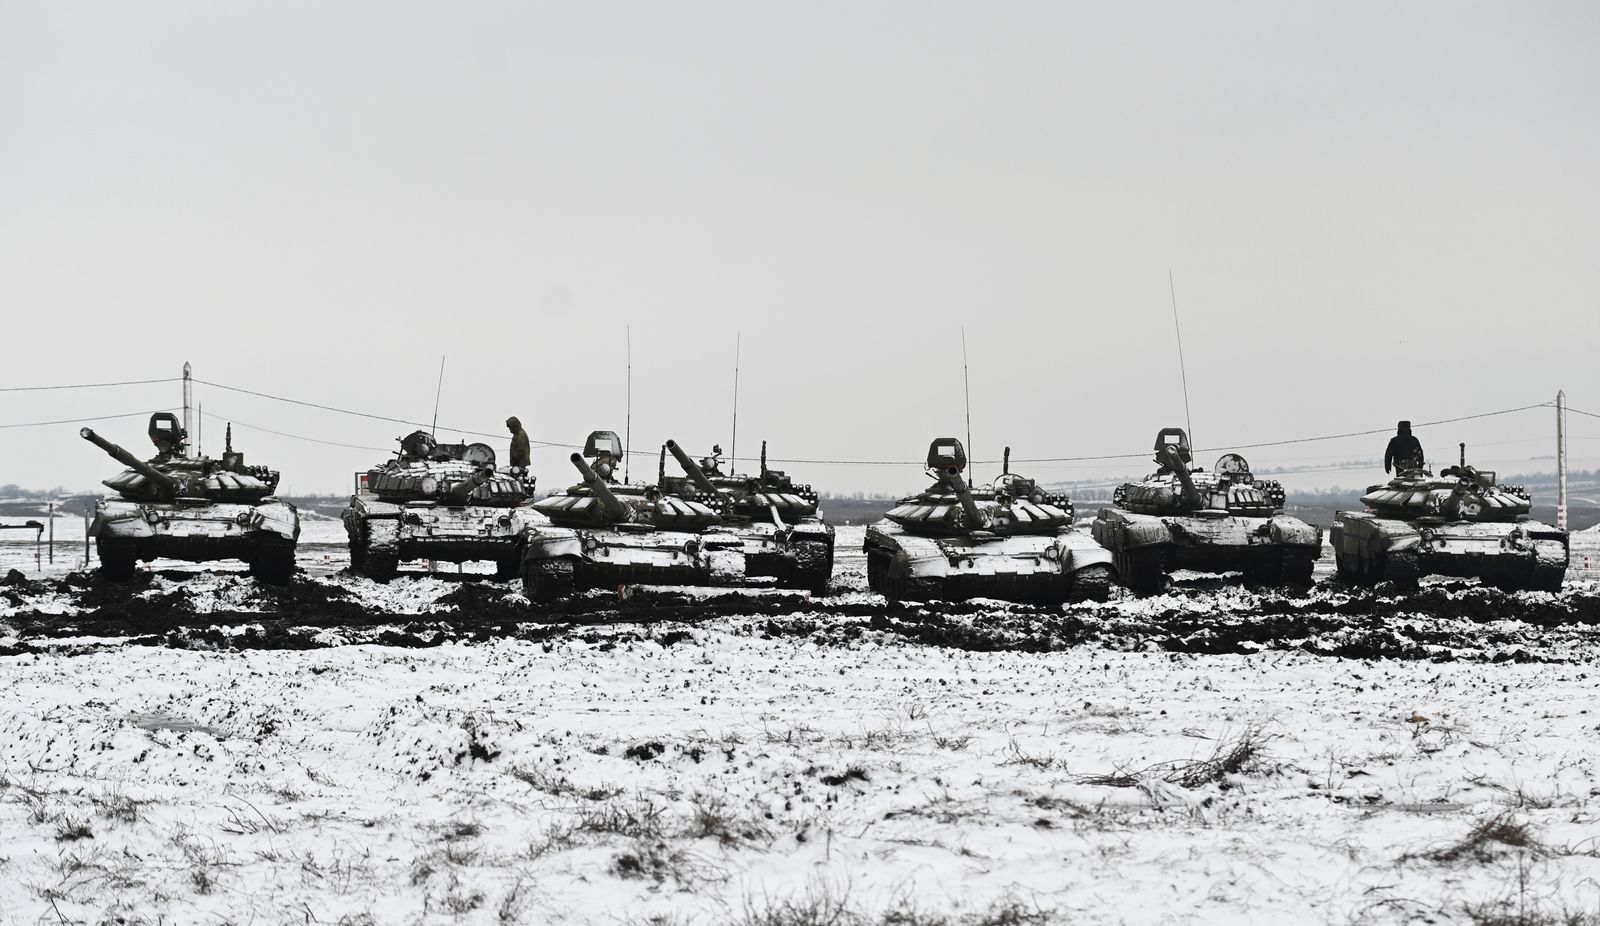 دبابات قتال روسية من طراز T-72B3 خلال مناورات قتالية في ميدان كاداموفسكي في منطقة روستوف الجنوبية، روسيا في 12 يناير2022. - REUTERS